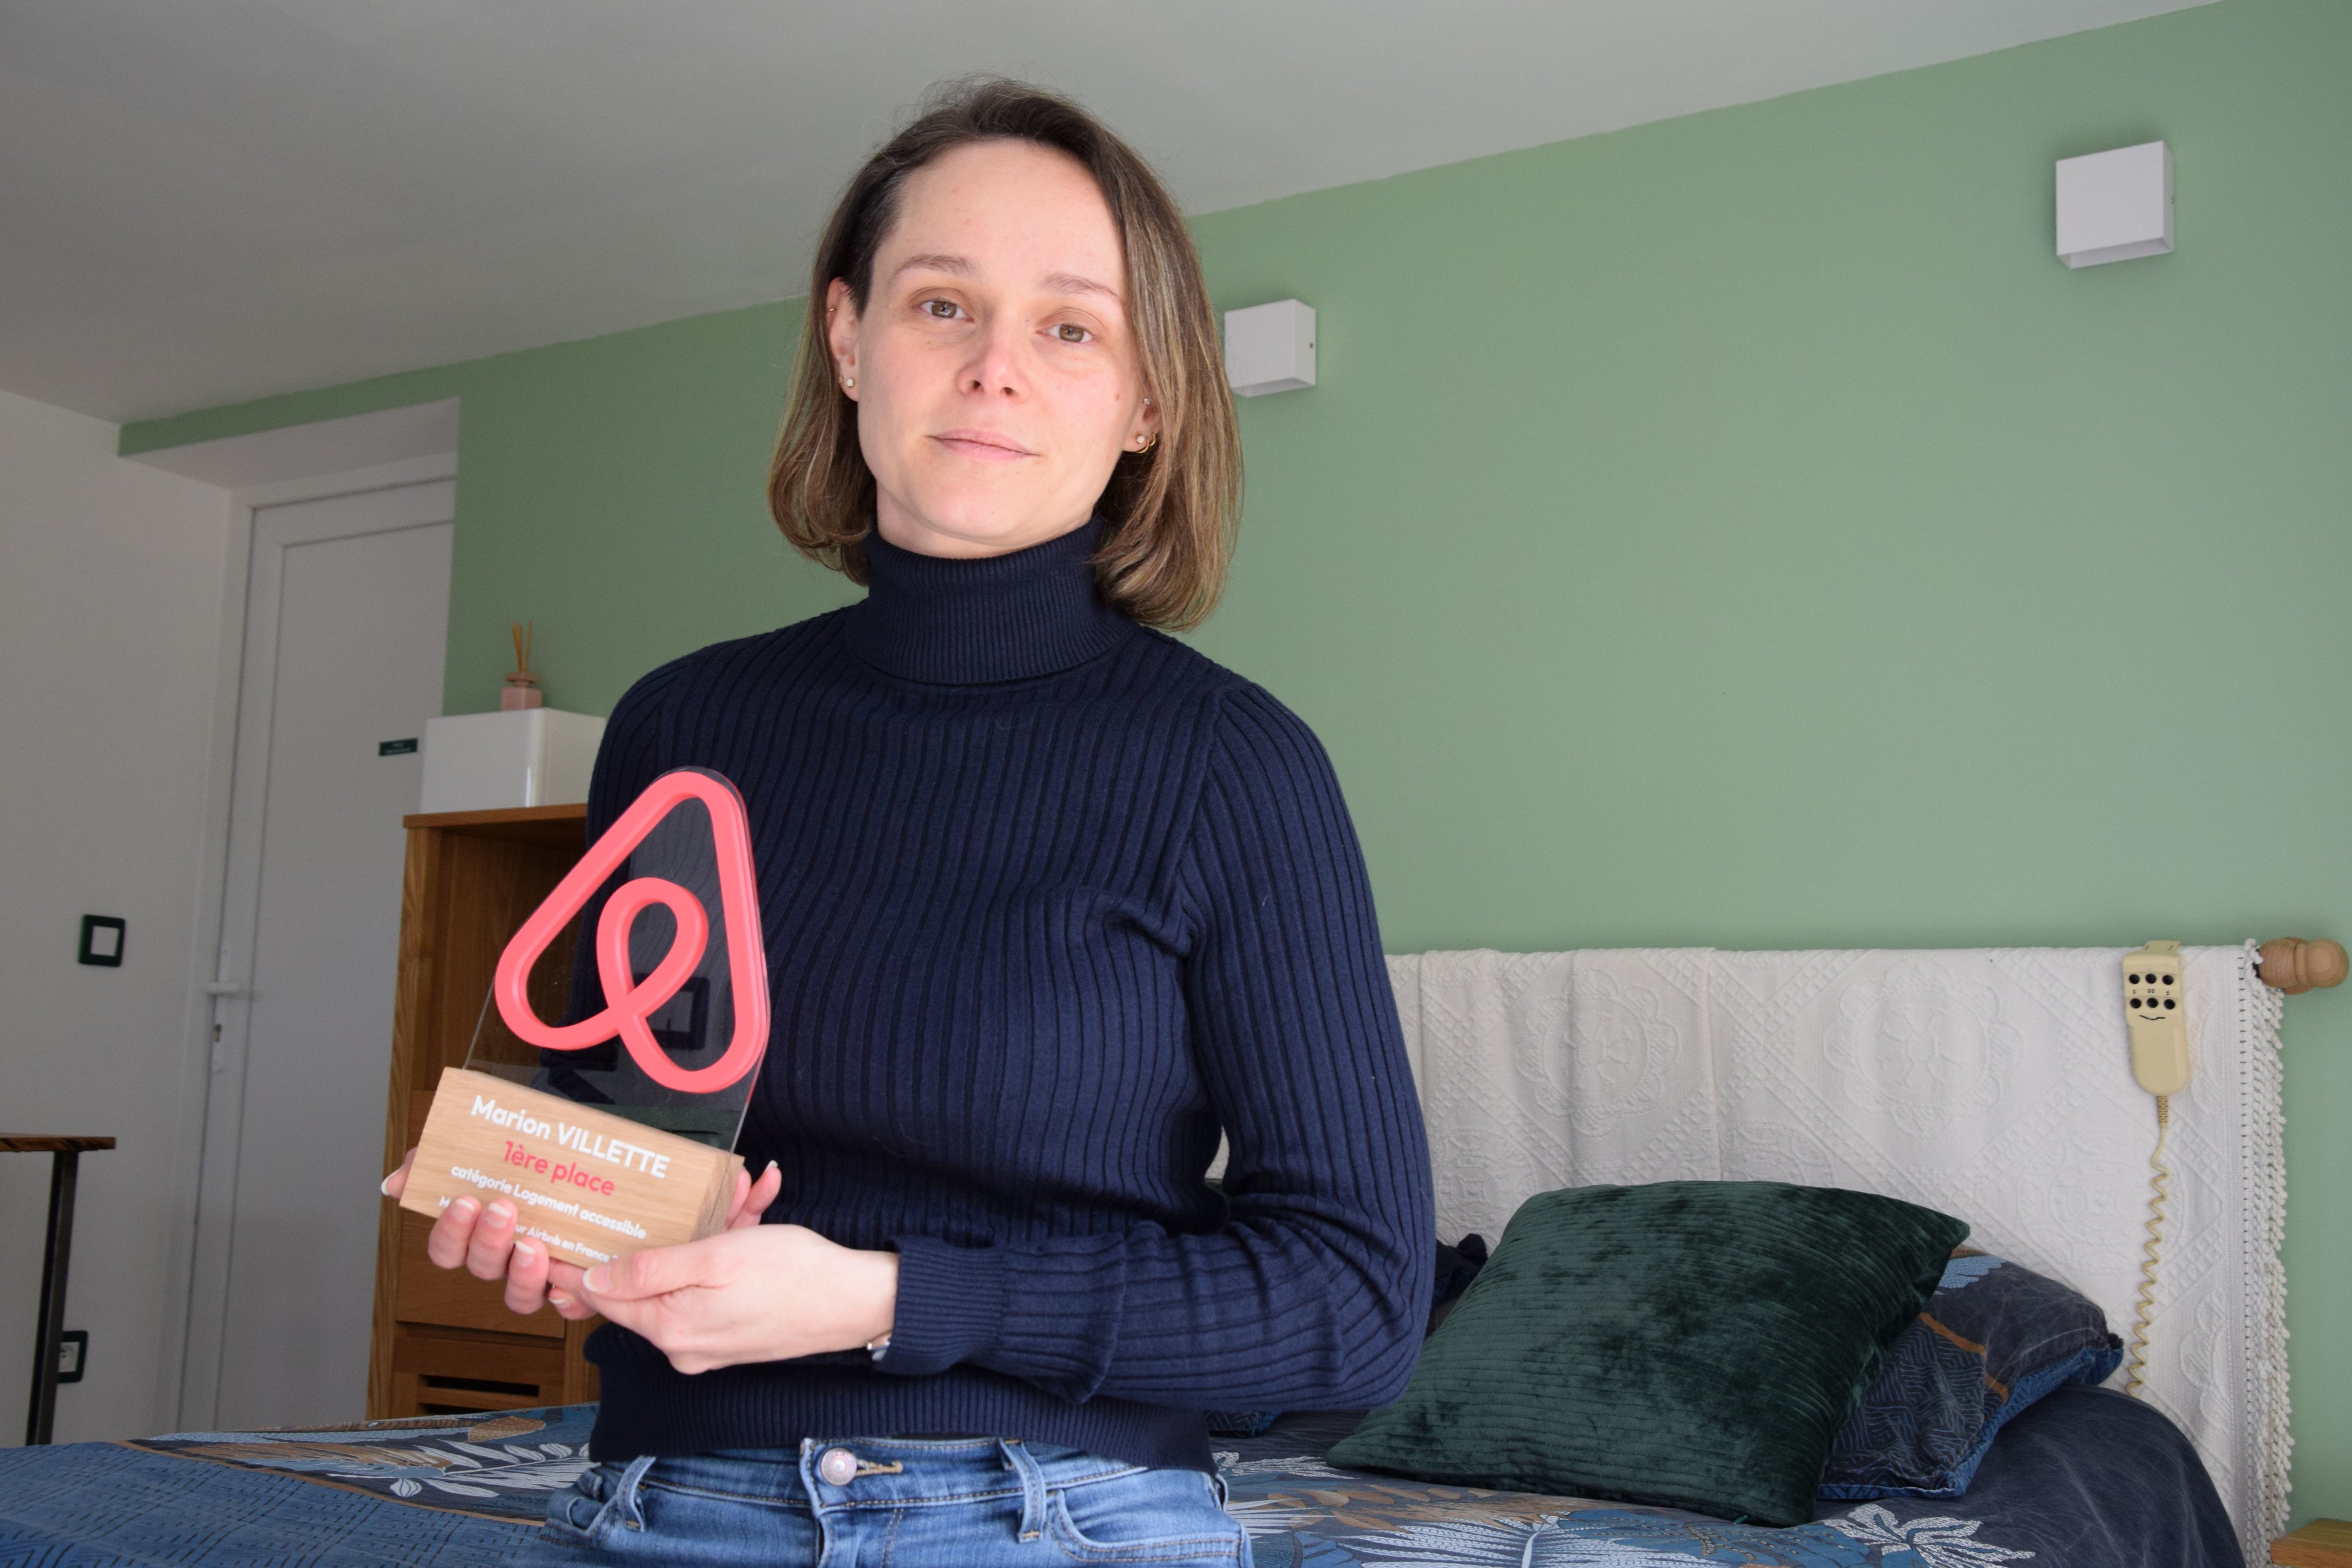 Marion, hôte Airbnb à Marboué (Eure-et-Loir) a remporté, jeudi 14 mars, le prix du meilleur hôte dans la catégorie « Logements accessibles»./LP/Christophe Blondel